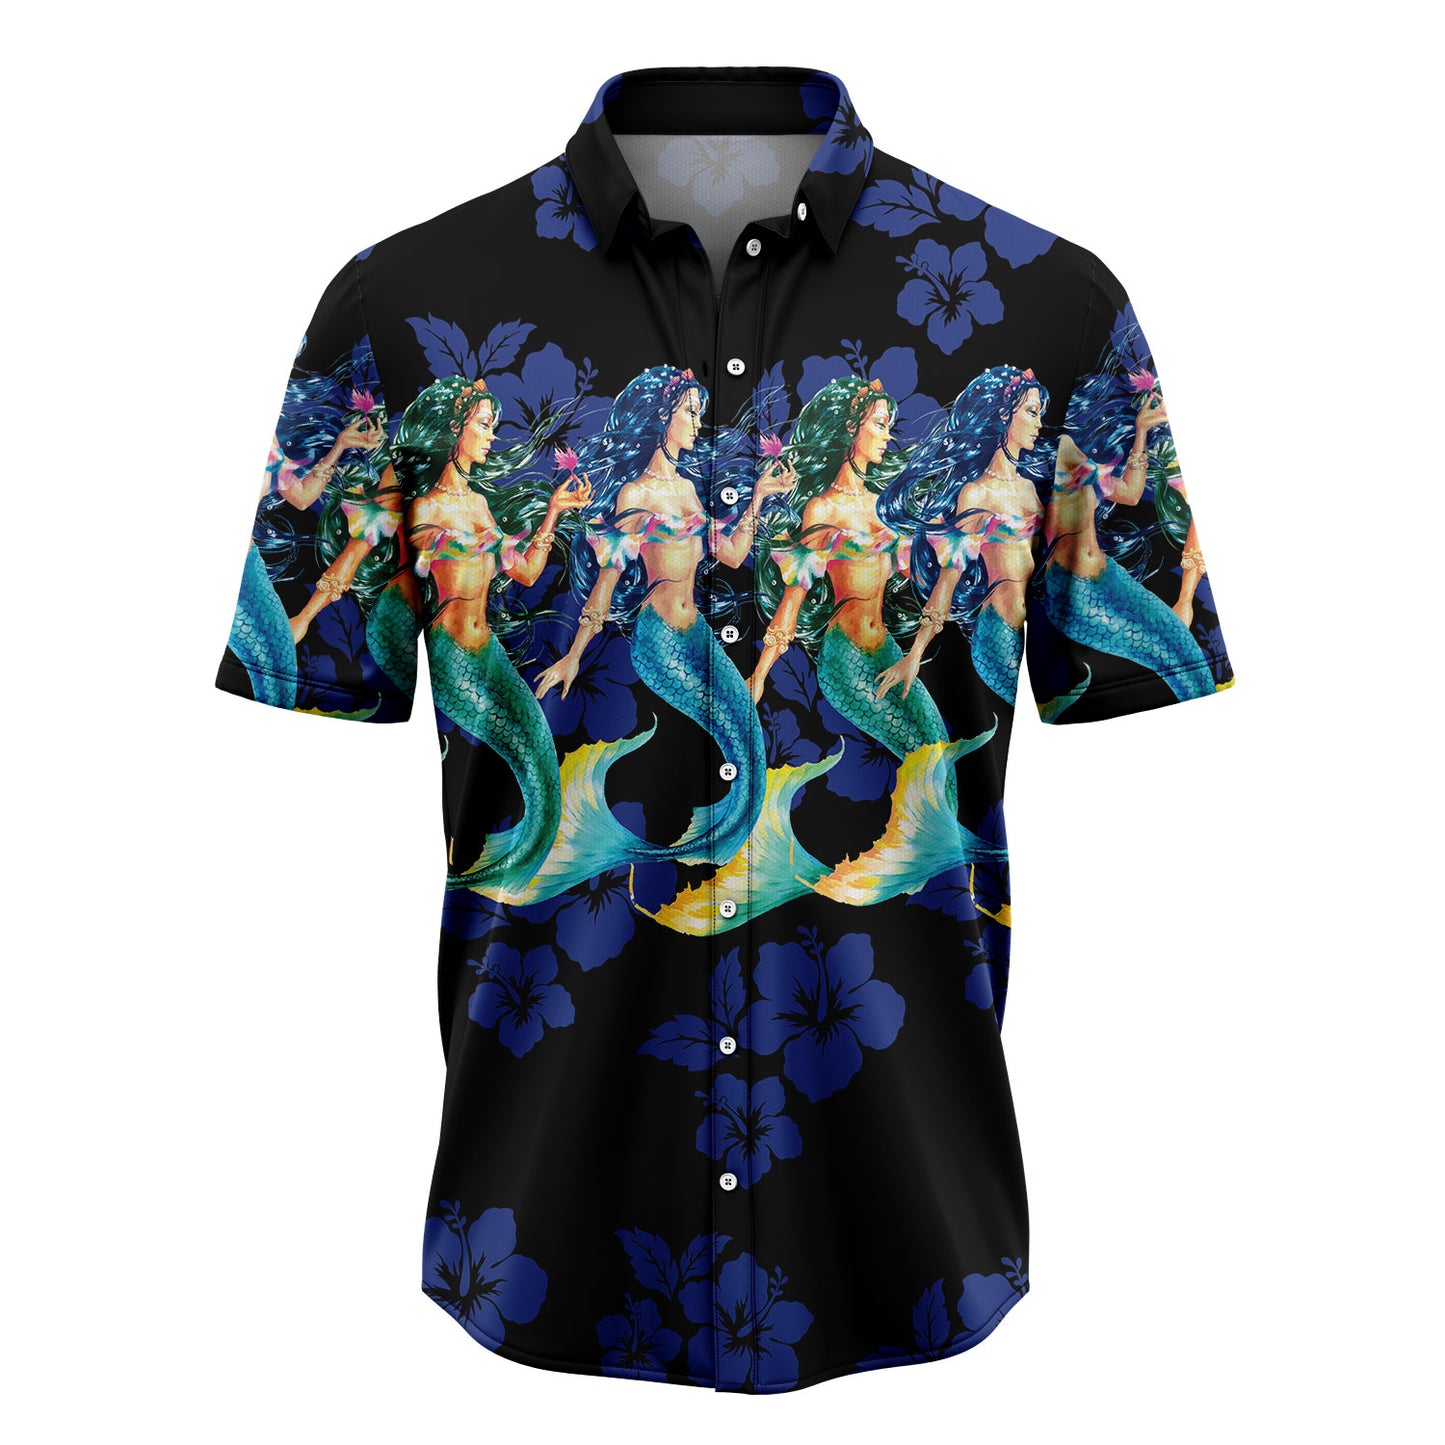 Awesome Mermaid TG5720 Hawaiian Shirt